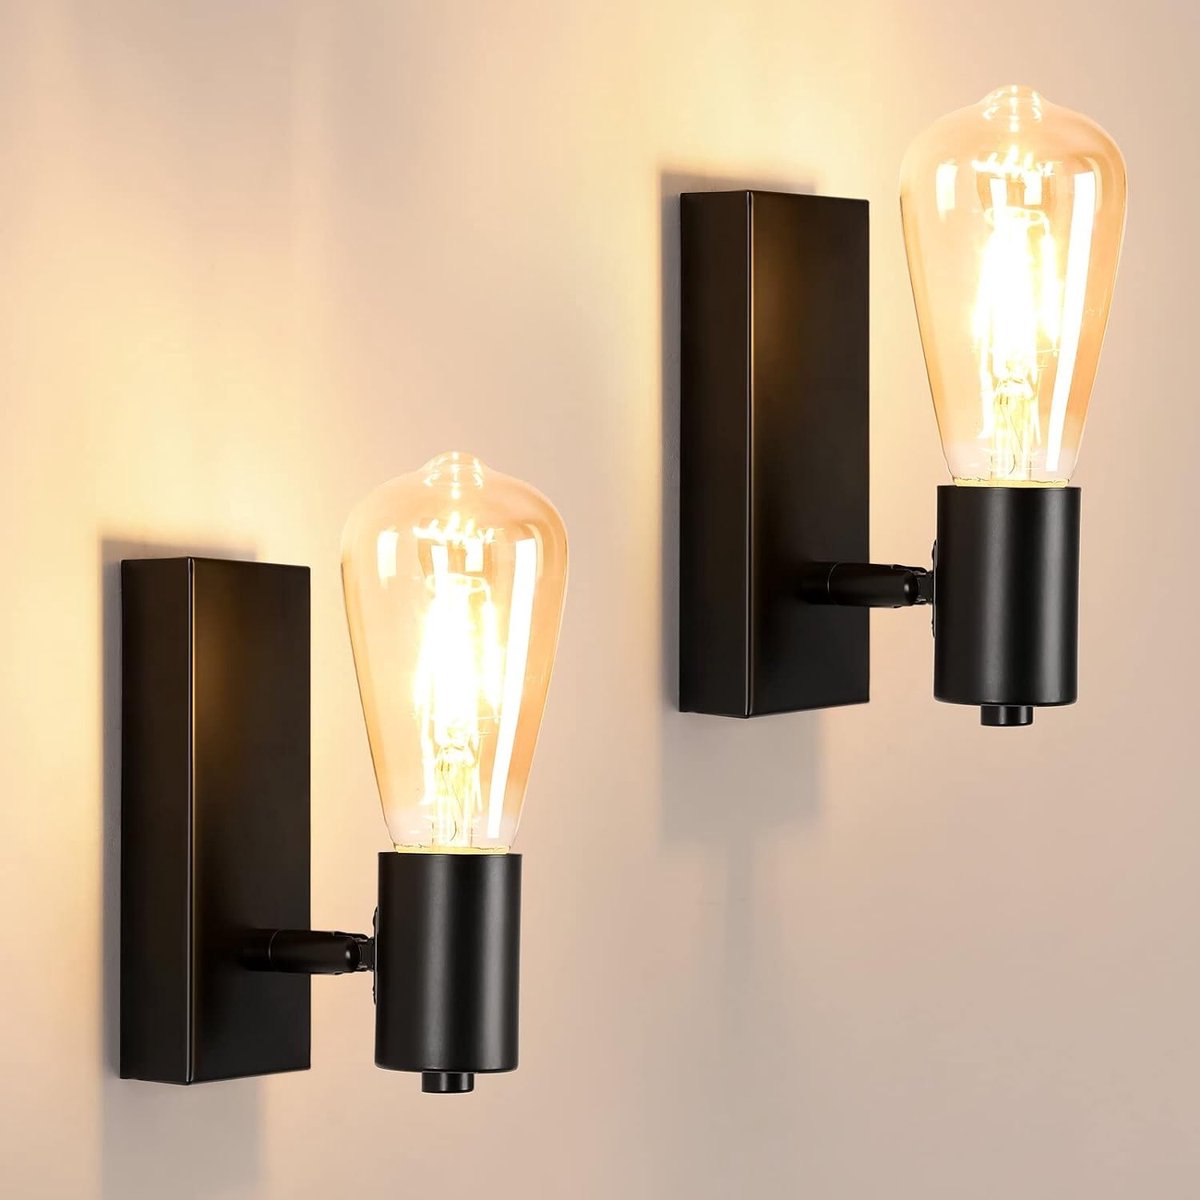 Delaveek-Set van 2 industriële wandlampen voor binnen - E27 - 90° of 360° verstelbaar - zwart - metalen wandlampen